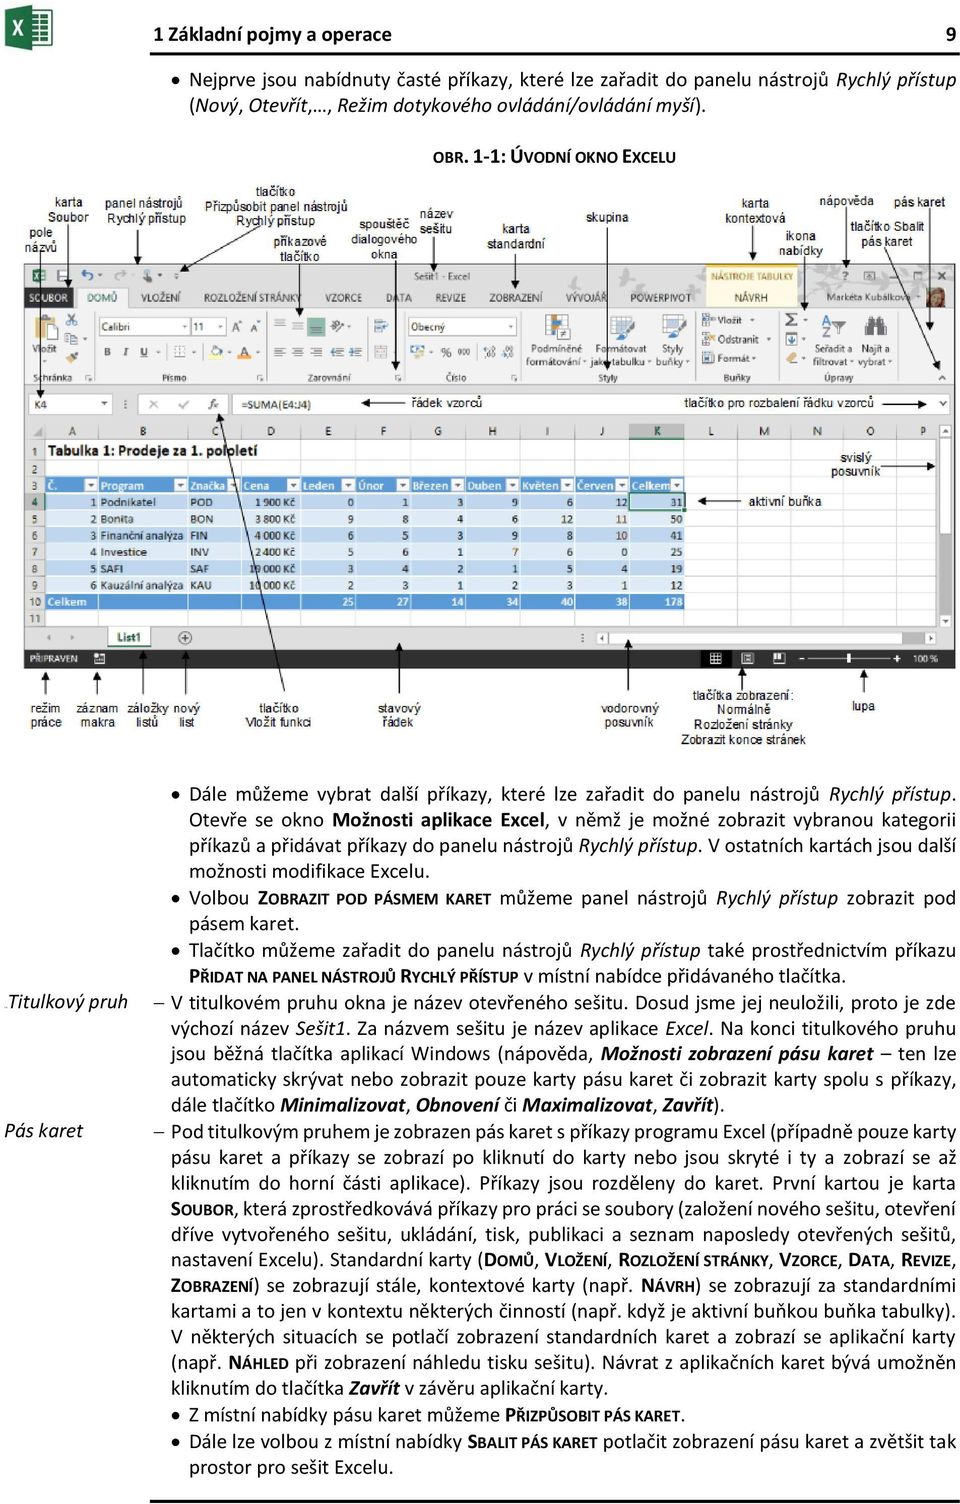 Otevře se okno Možnosti aplikace Excel, v němž je možné zobrazit vybranou kategorii příkazů a přidávat příkazy do panelu nástrojů Rychlý přístup.